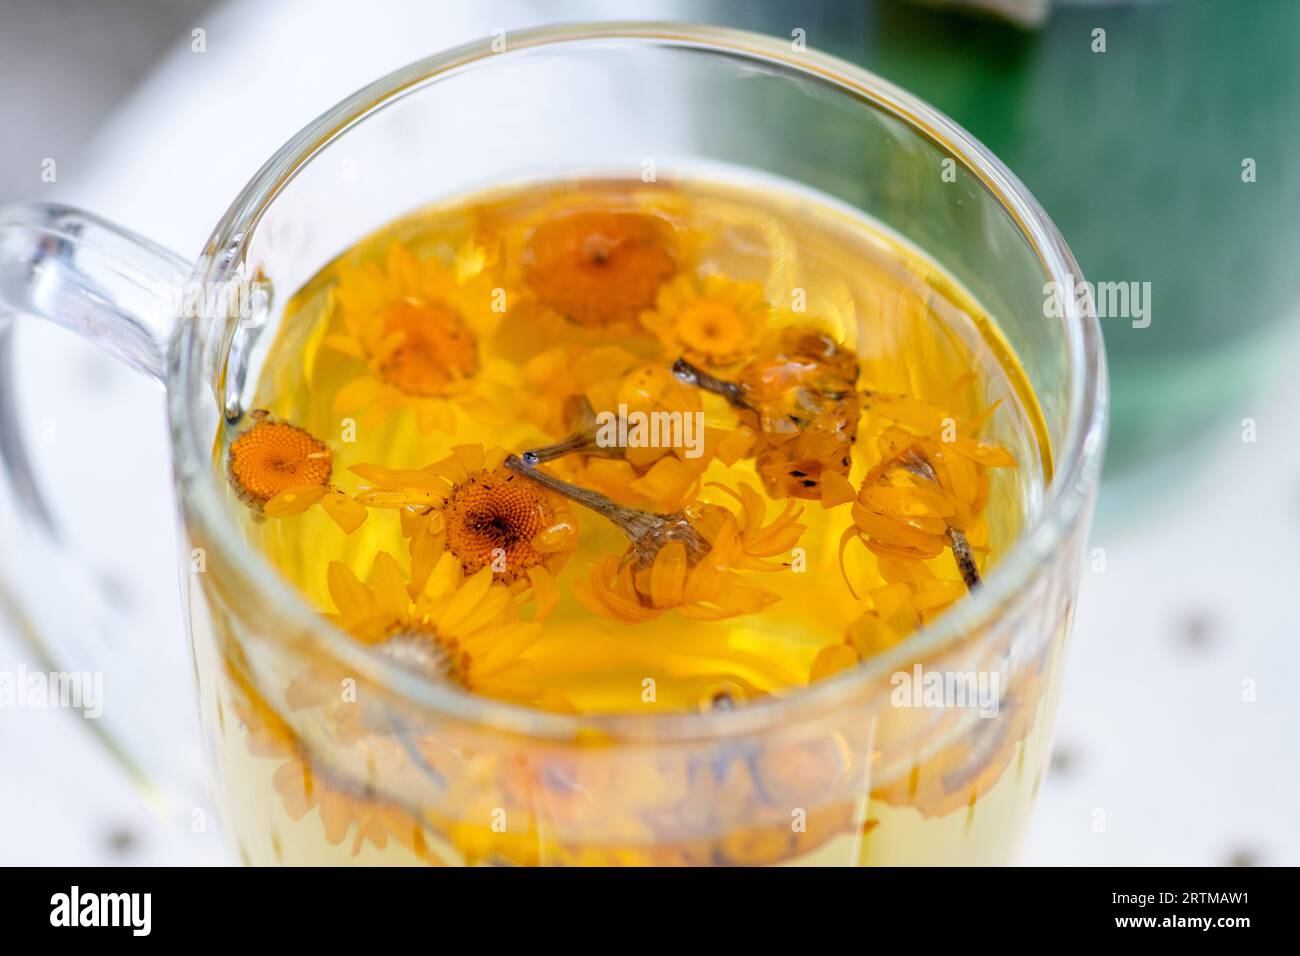 Tasse en verre avec de l'eau chaude et des fleurs de souci ou de calendula pour une infusion de tisane, gros plan Banque D'Images